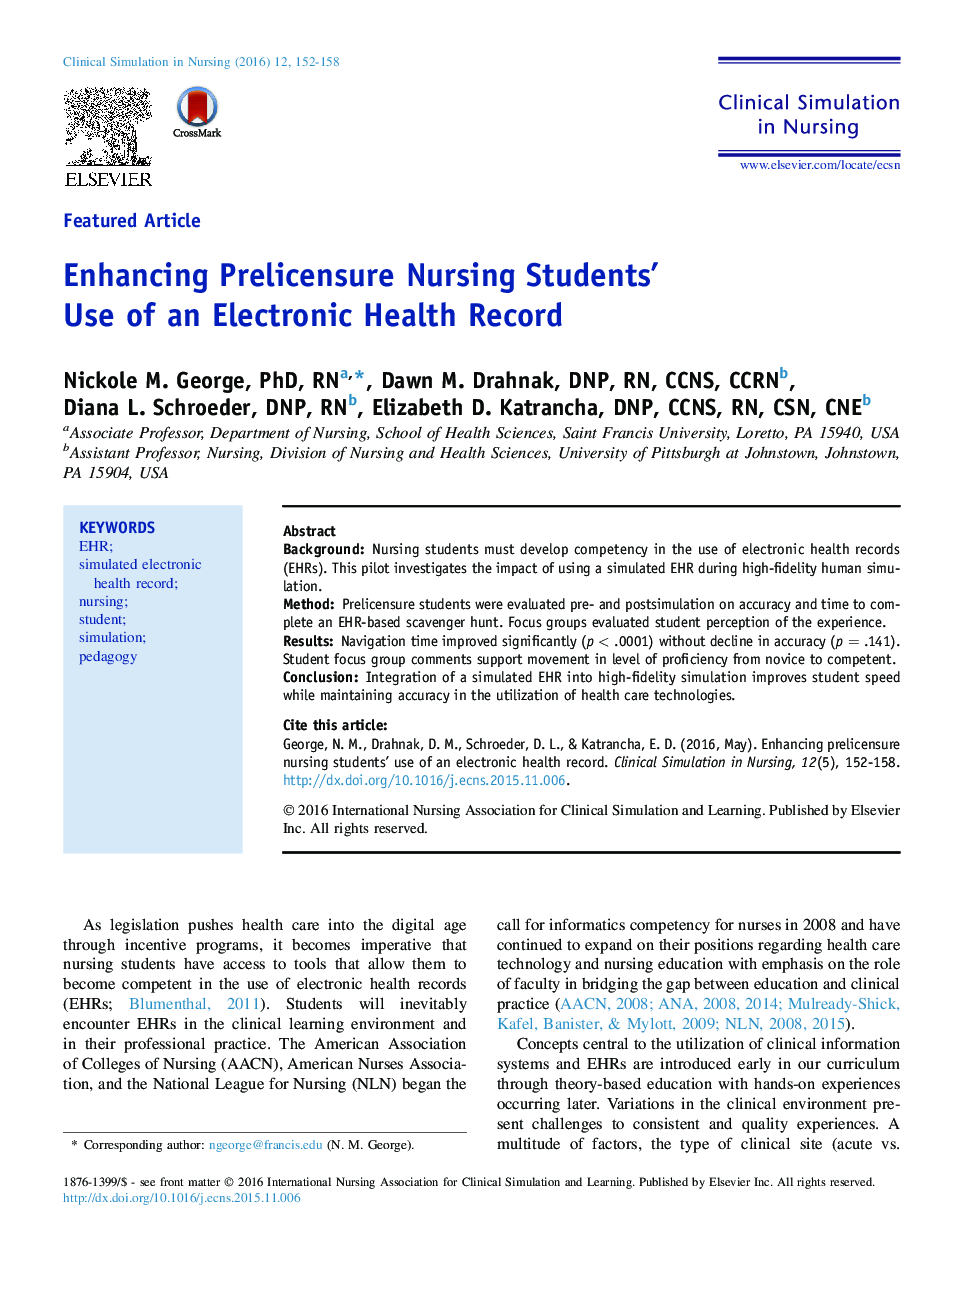 افزایش استفاده دانشجویان پرستاری از پرونده سلامت الکترونیکی